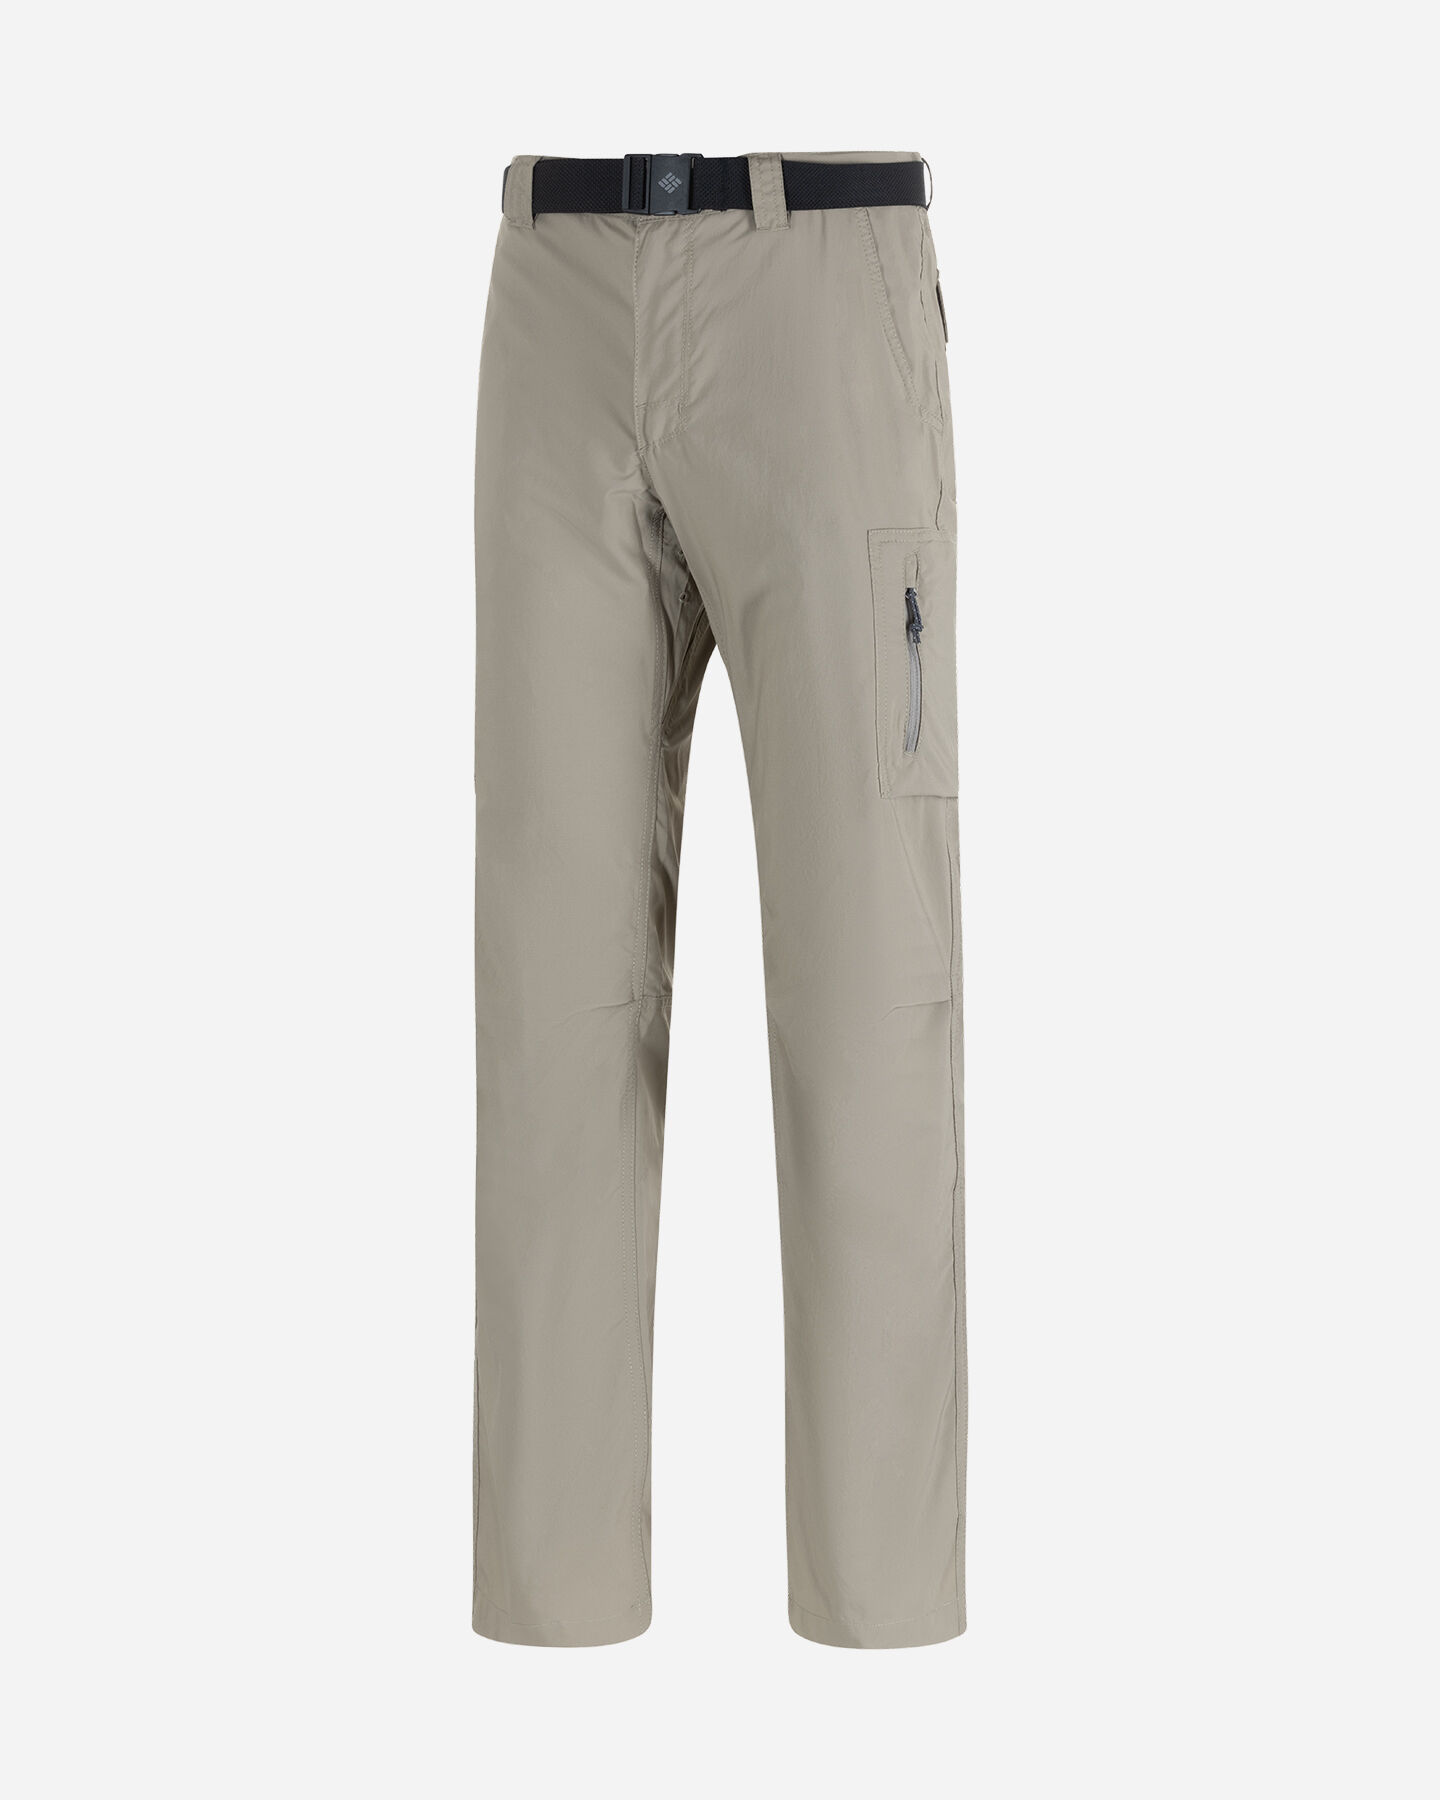  Pantalone outdoor COLUMBIA SILVER RIDGE M S5553524|221|3232 scatto 0